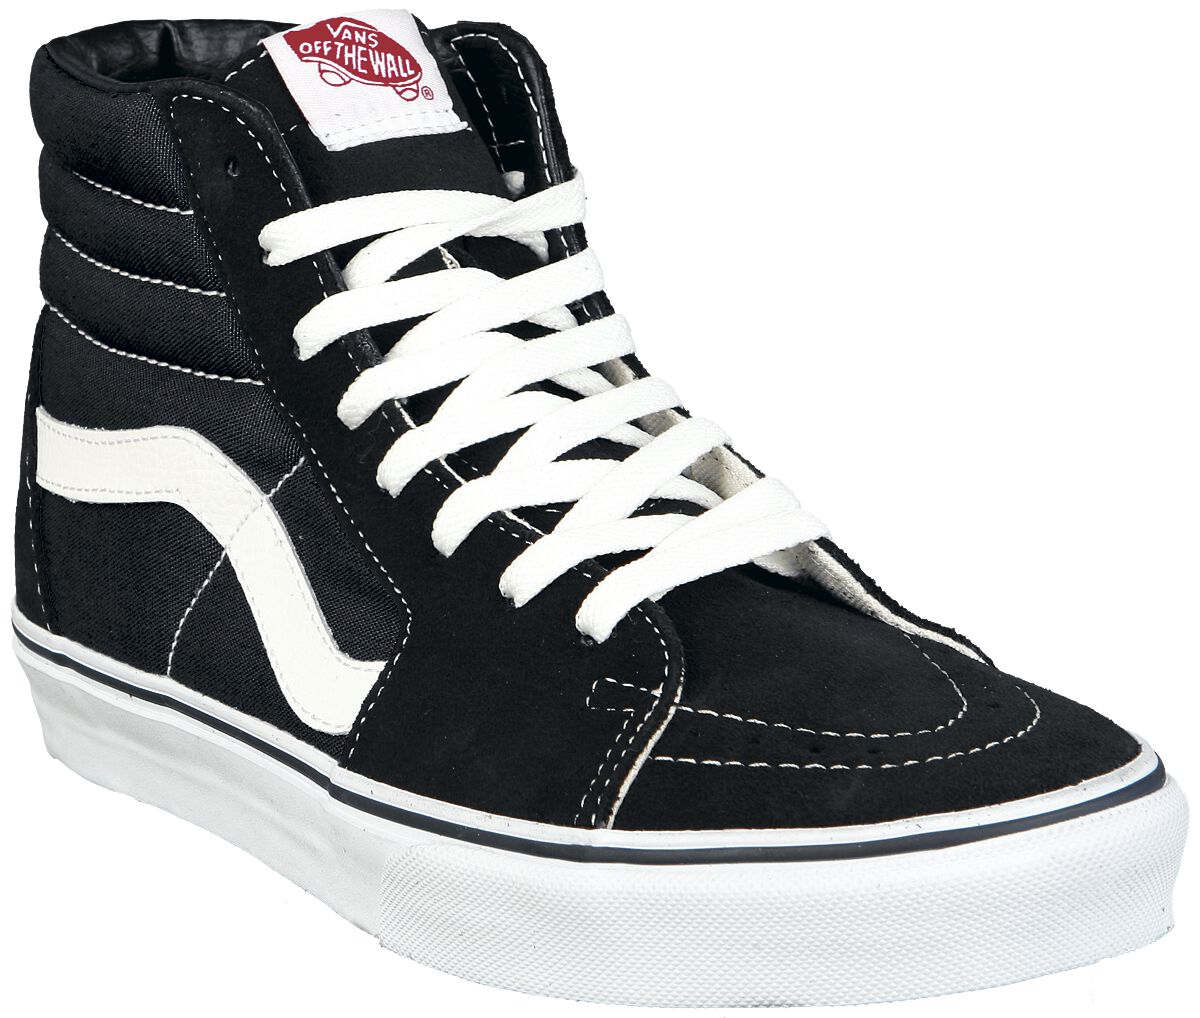 Vans Sneaker high - SK8-Hi - EU37 bis EU47 - Größe EU45 - schwarz/weiß